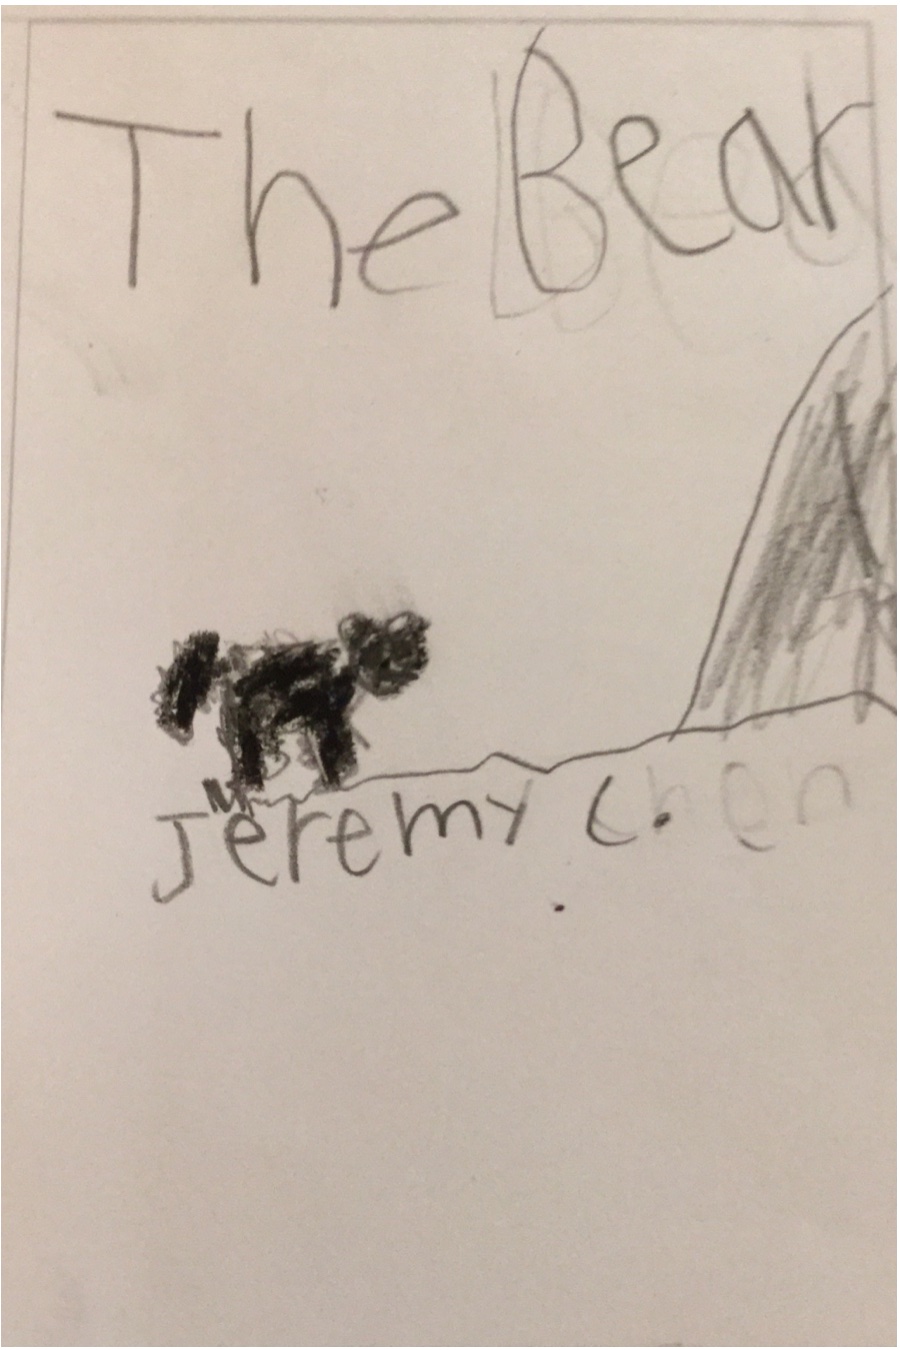 The Bear by Jeremy